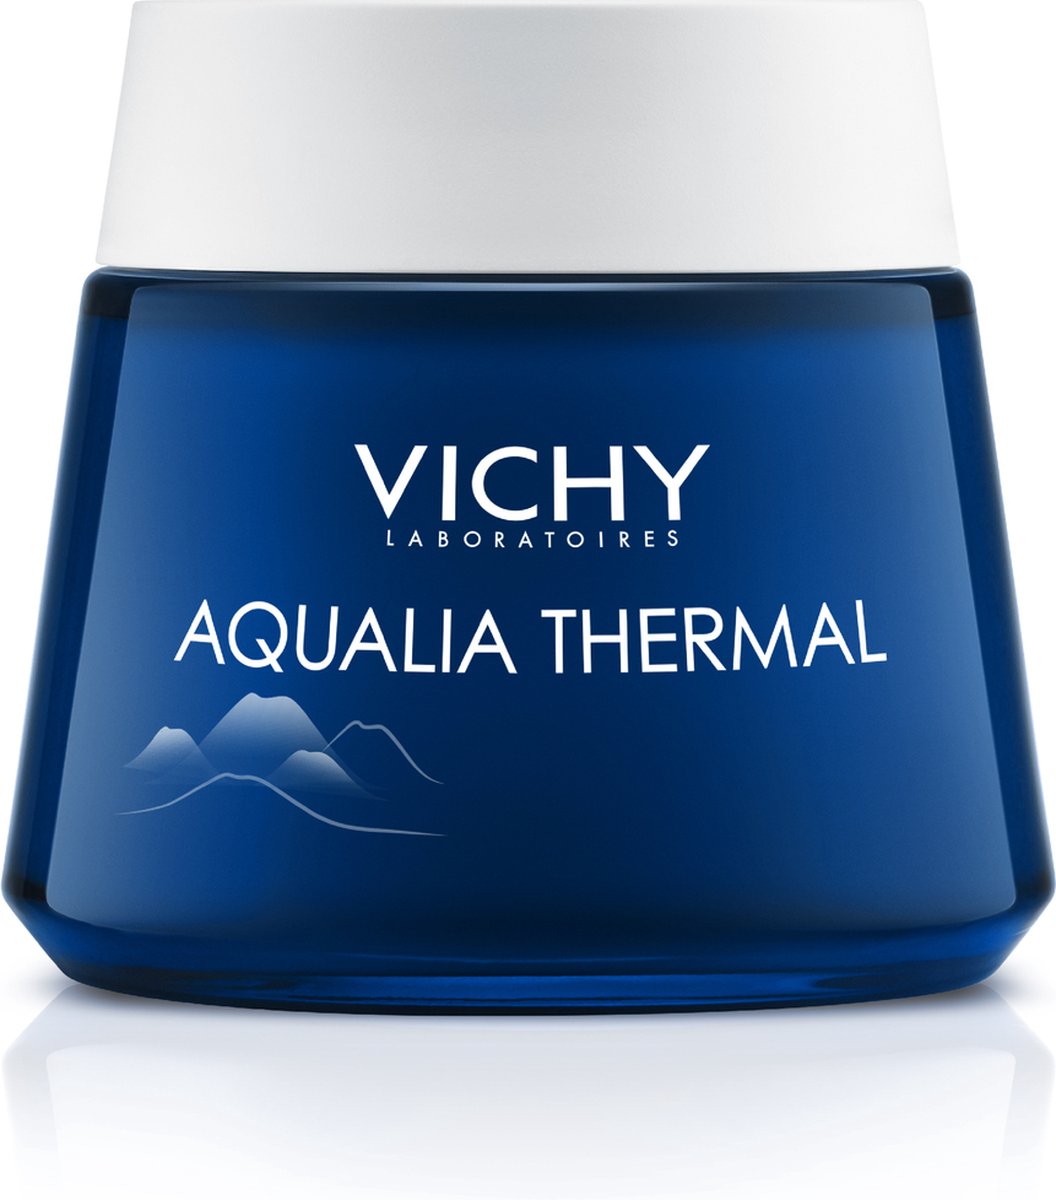 Vichy Aqualia Thermal nacht spa 75ml voor een vochtarme huid - VICHY